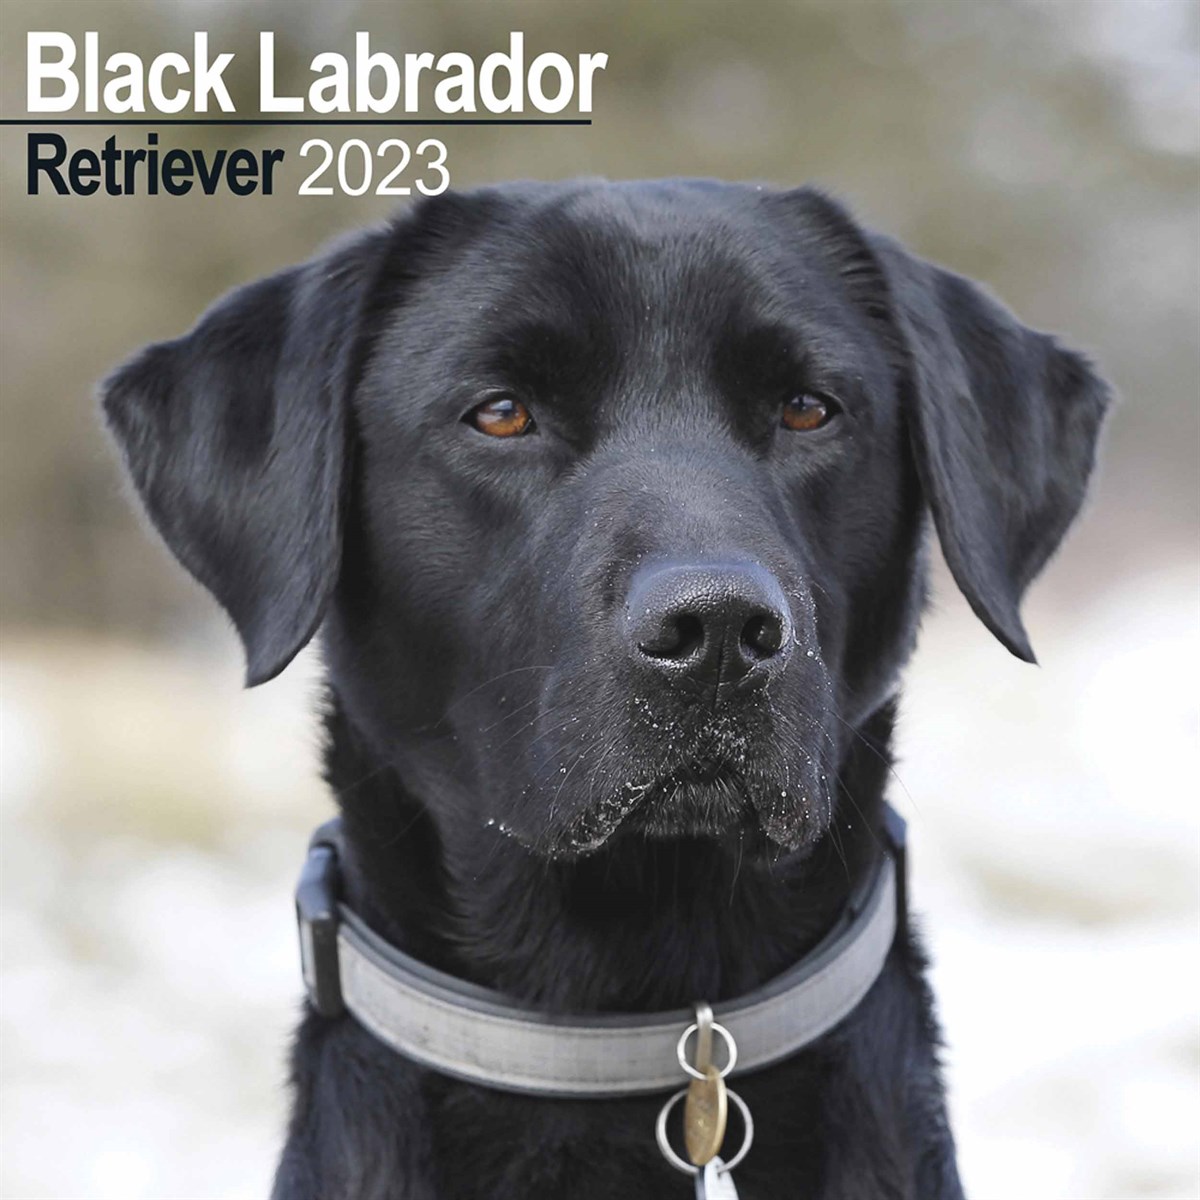 Black Labrador Retriever 2023 Calendars